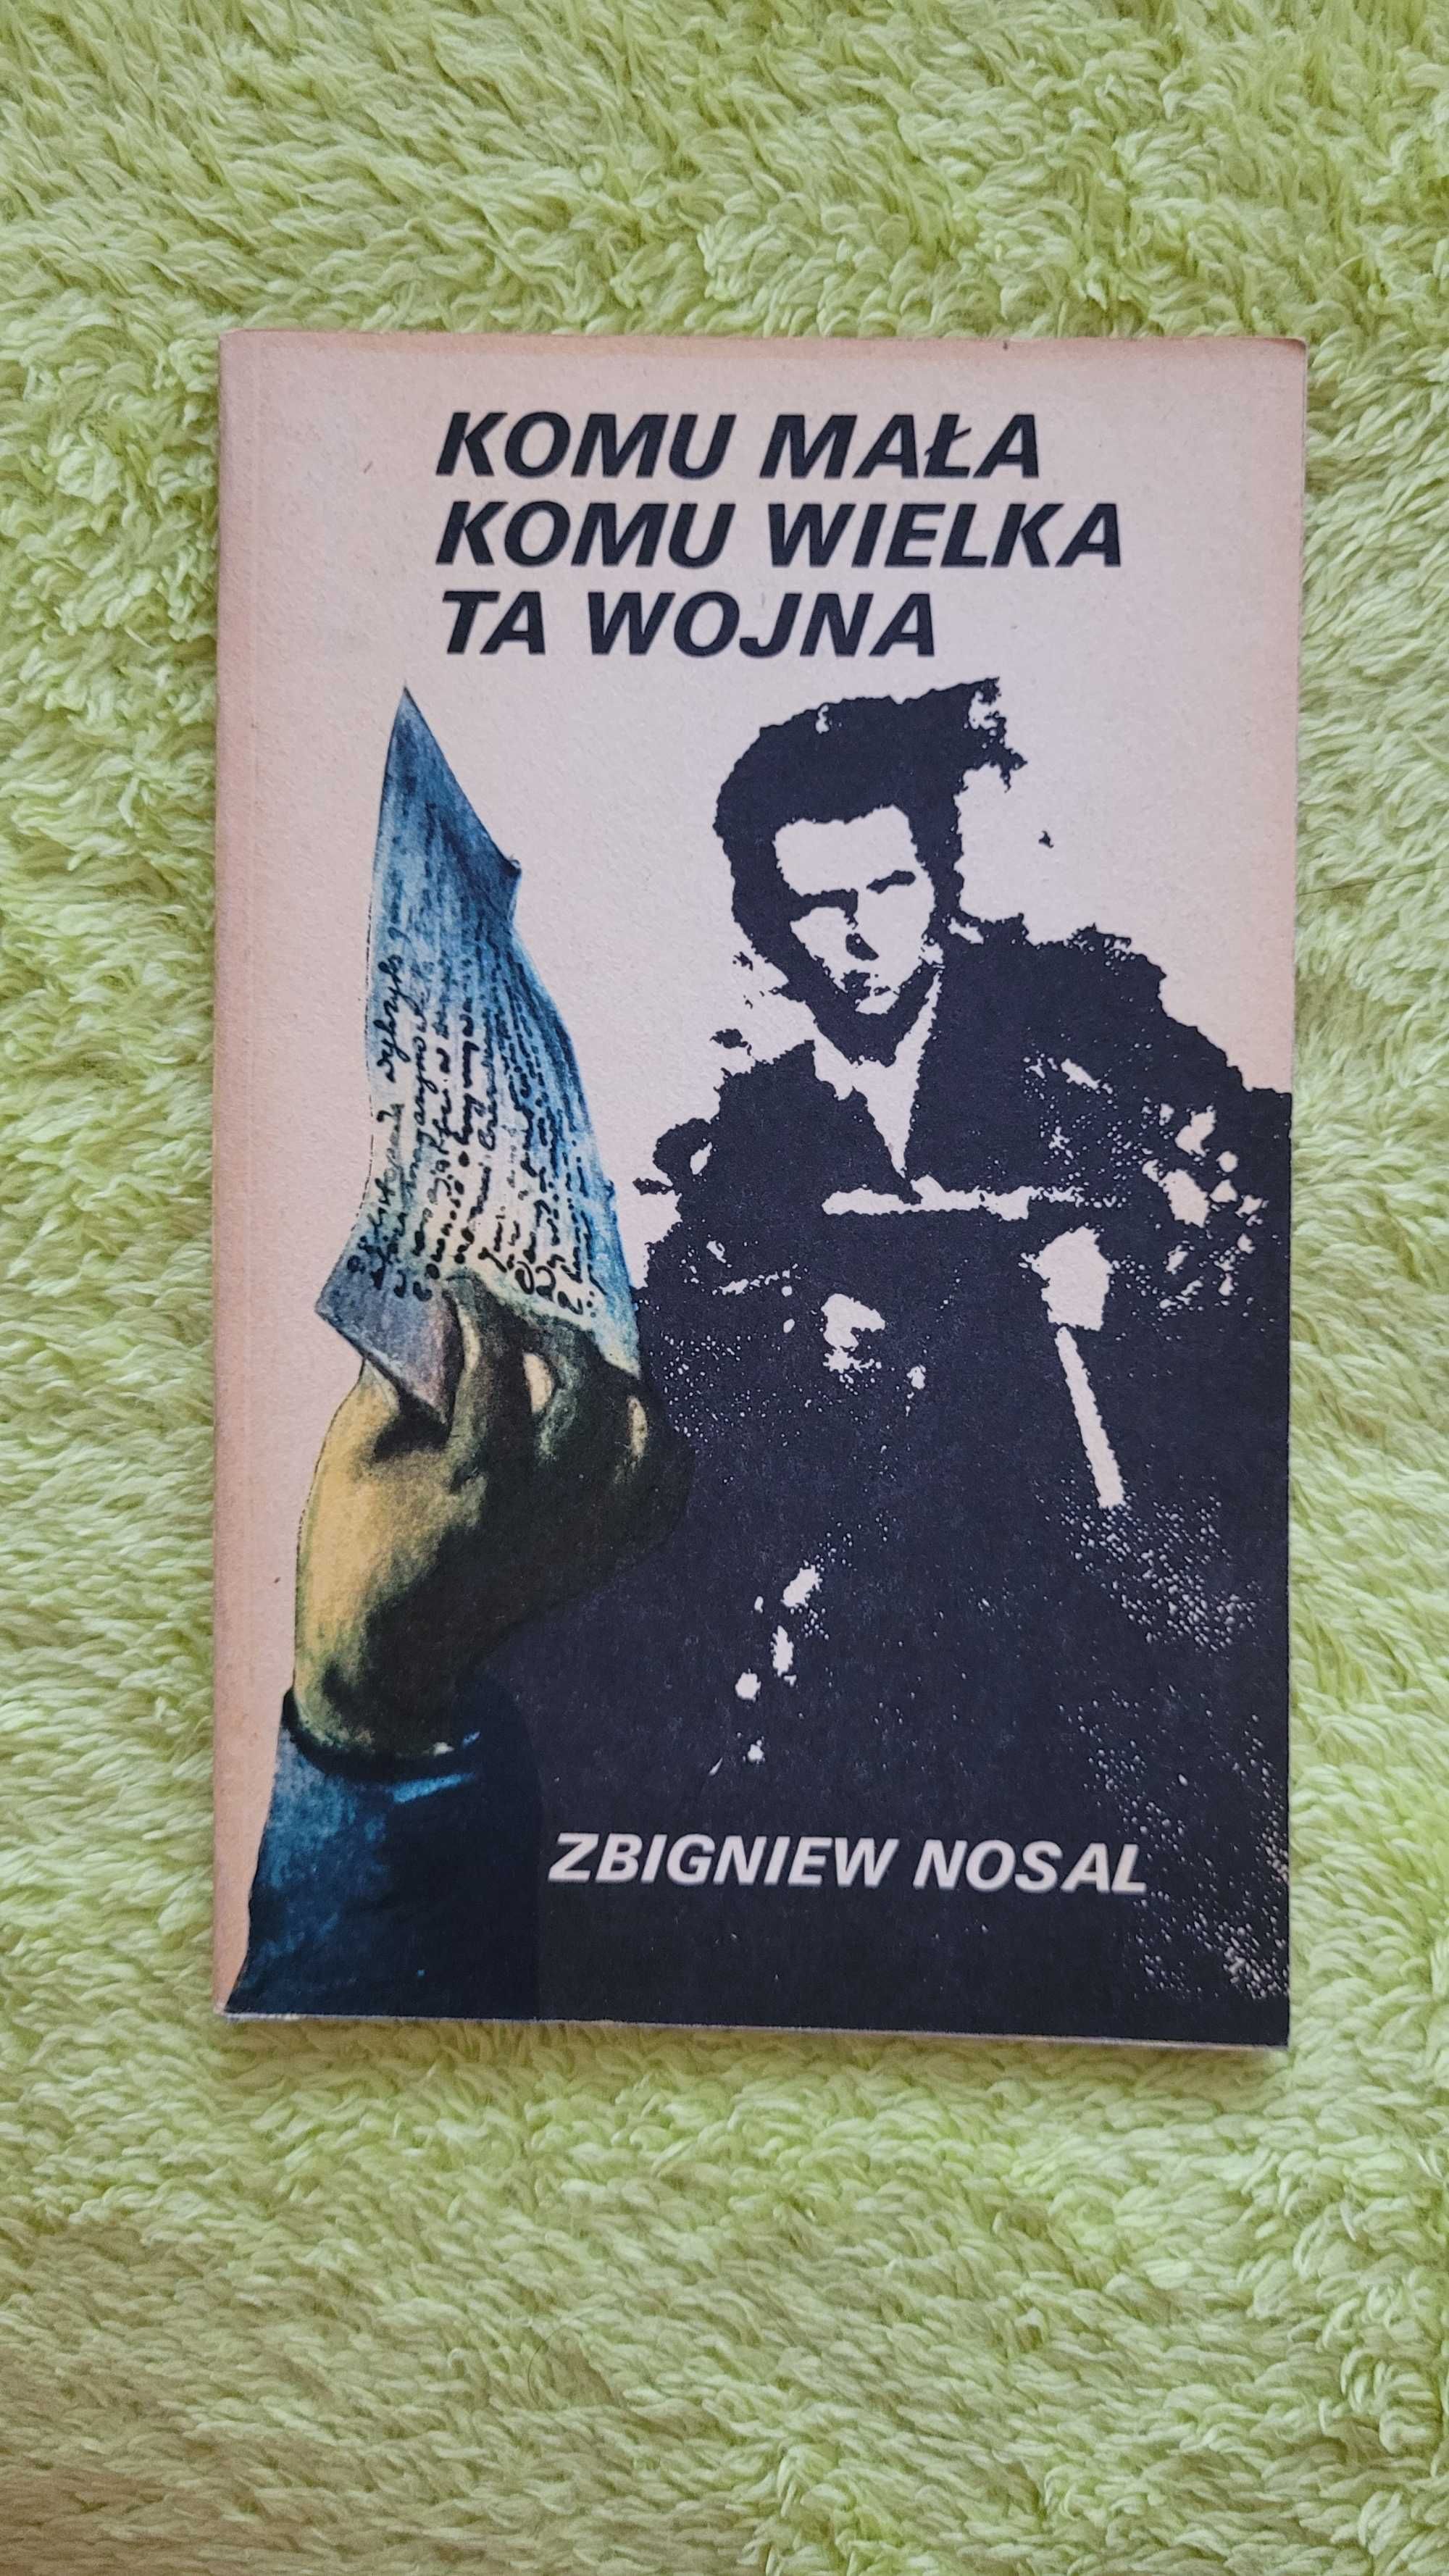 Książka: "Komu mała komu wielka ta wojna", Zbigniew Nosal